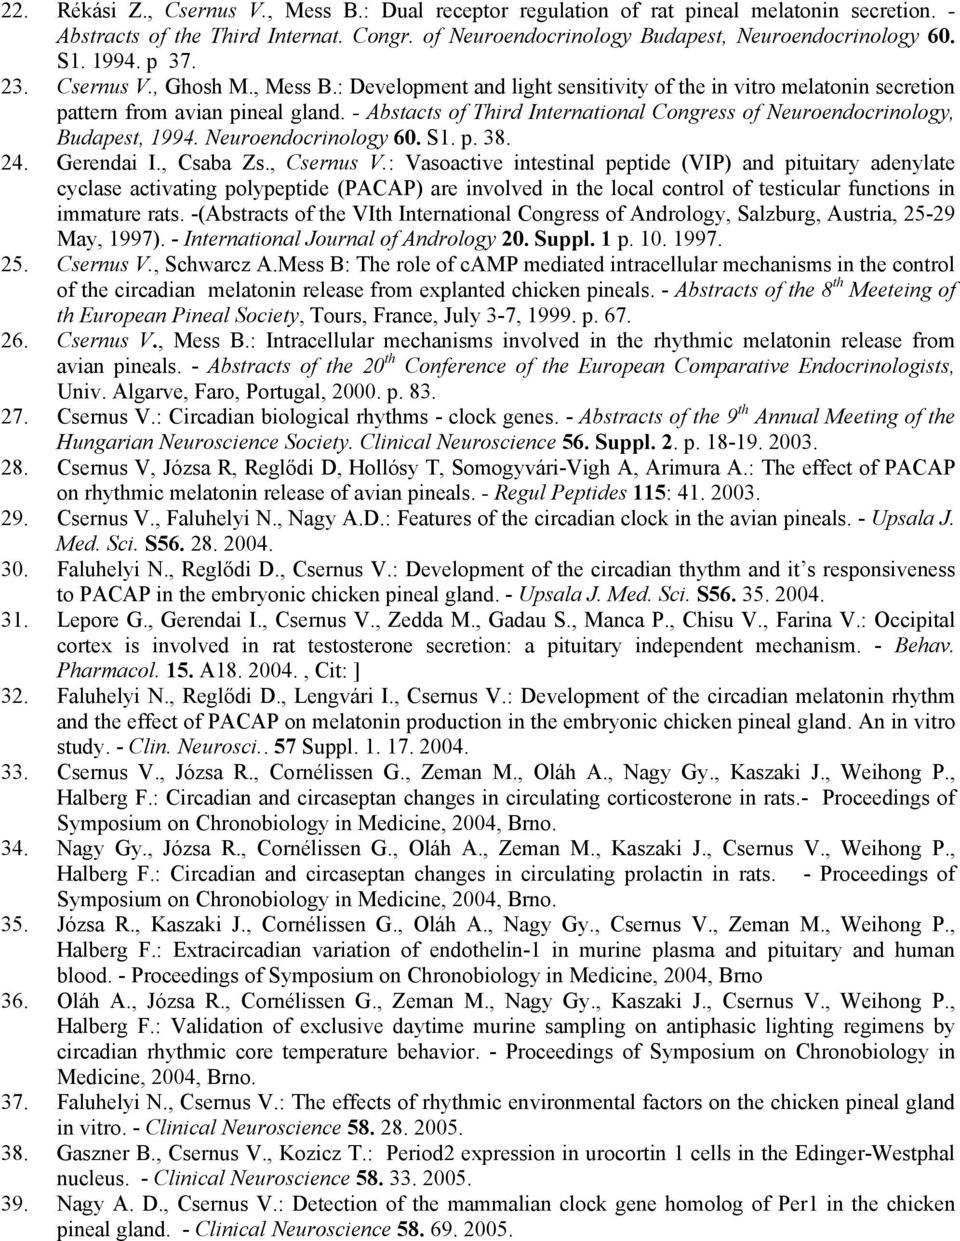 - Abstacts of Third International Congress of Neuroendocrinology, Budapest, 1994. Neuroendocrinology 60. S1. p. 38. 24. Gerendai I., Csaba Zs., Csernus V.